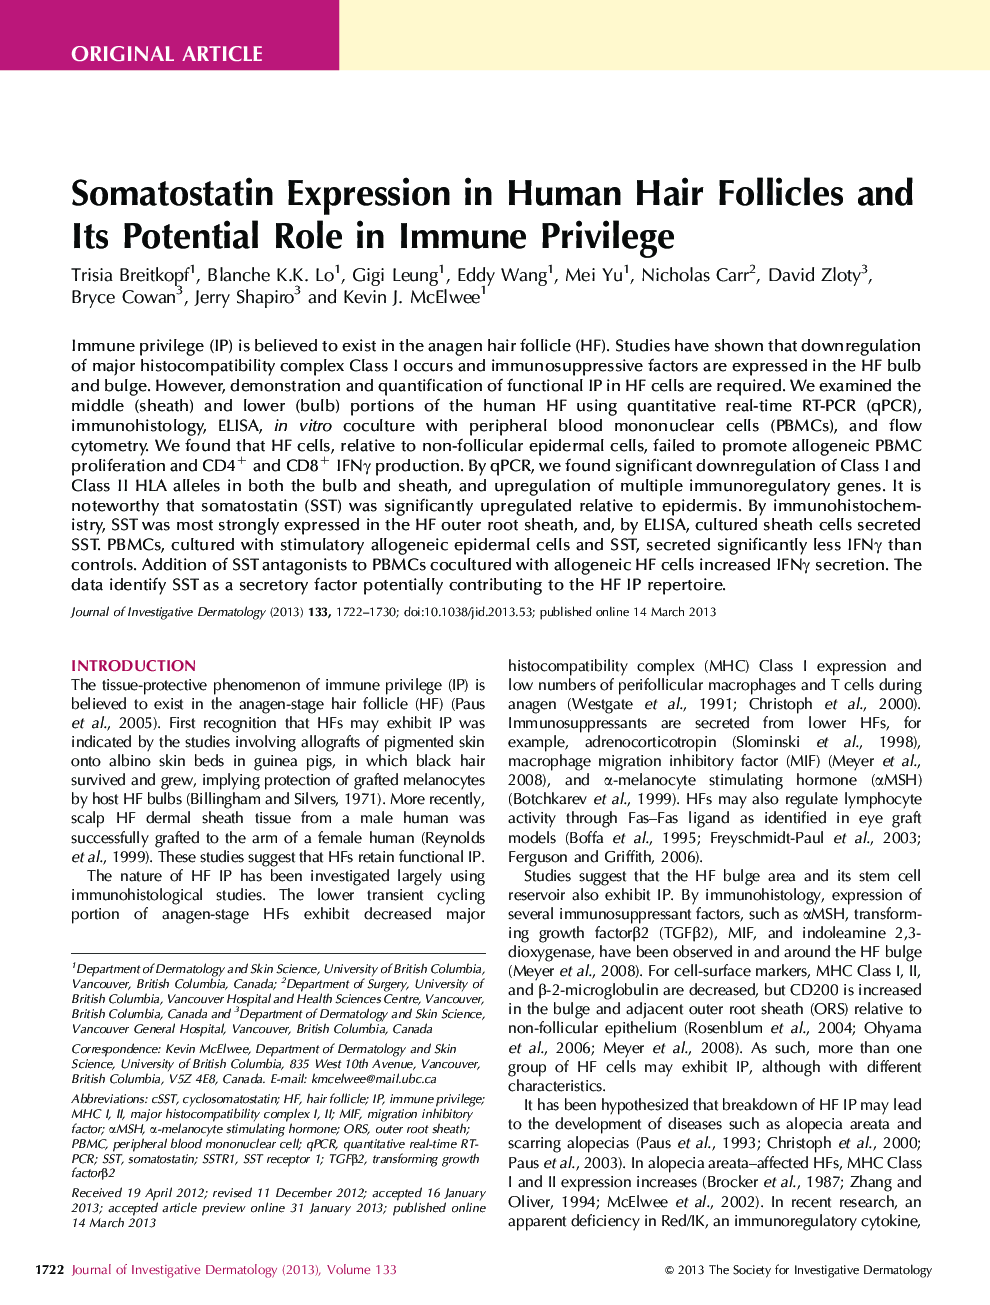 بیان سمواستاتین در فولیکول های موی انسان و نقش بالقوه آن در امتیاز های ایمنی 